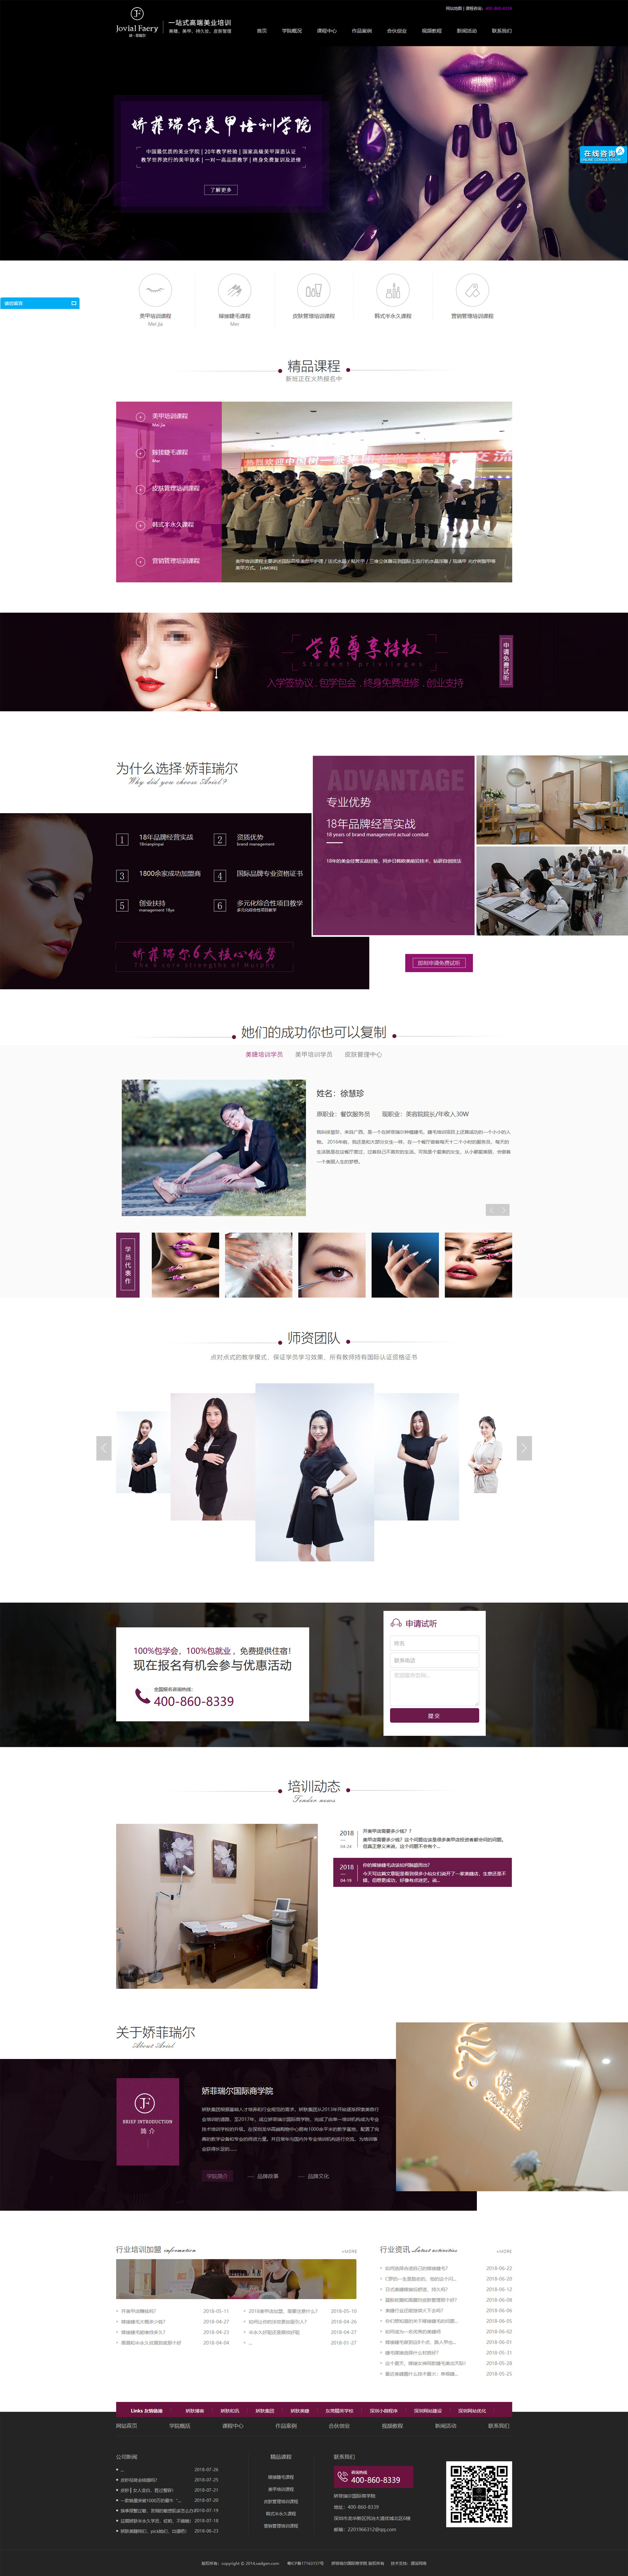 美业培训行业营销型网站设计深圳娇菲瑞尔美业集团